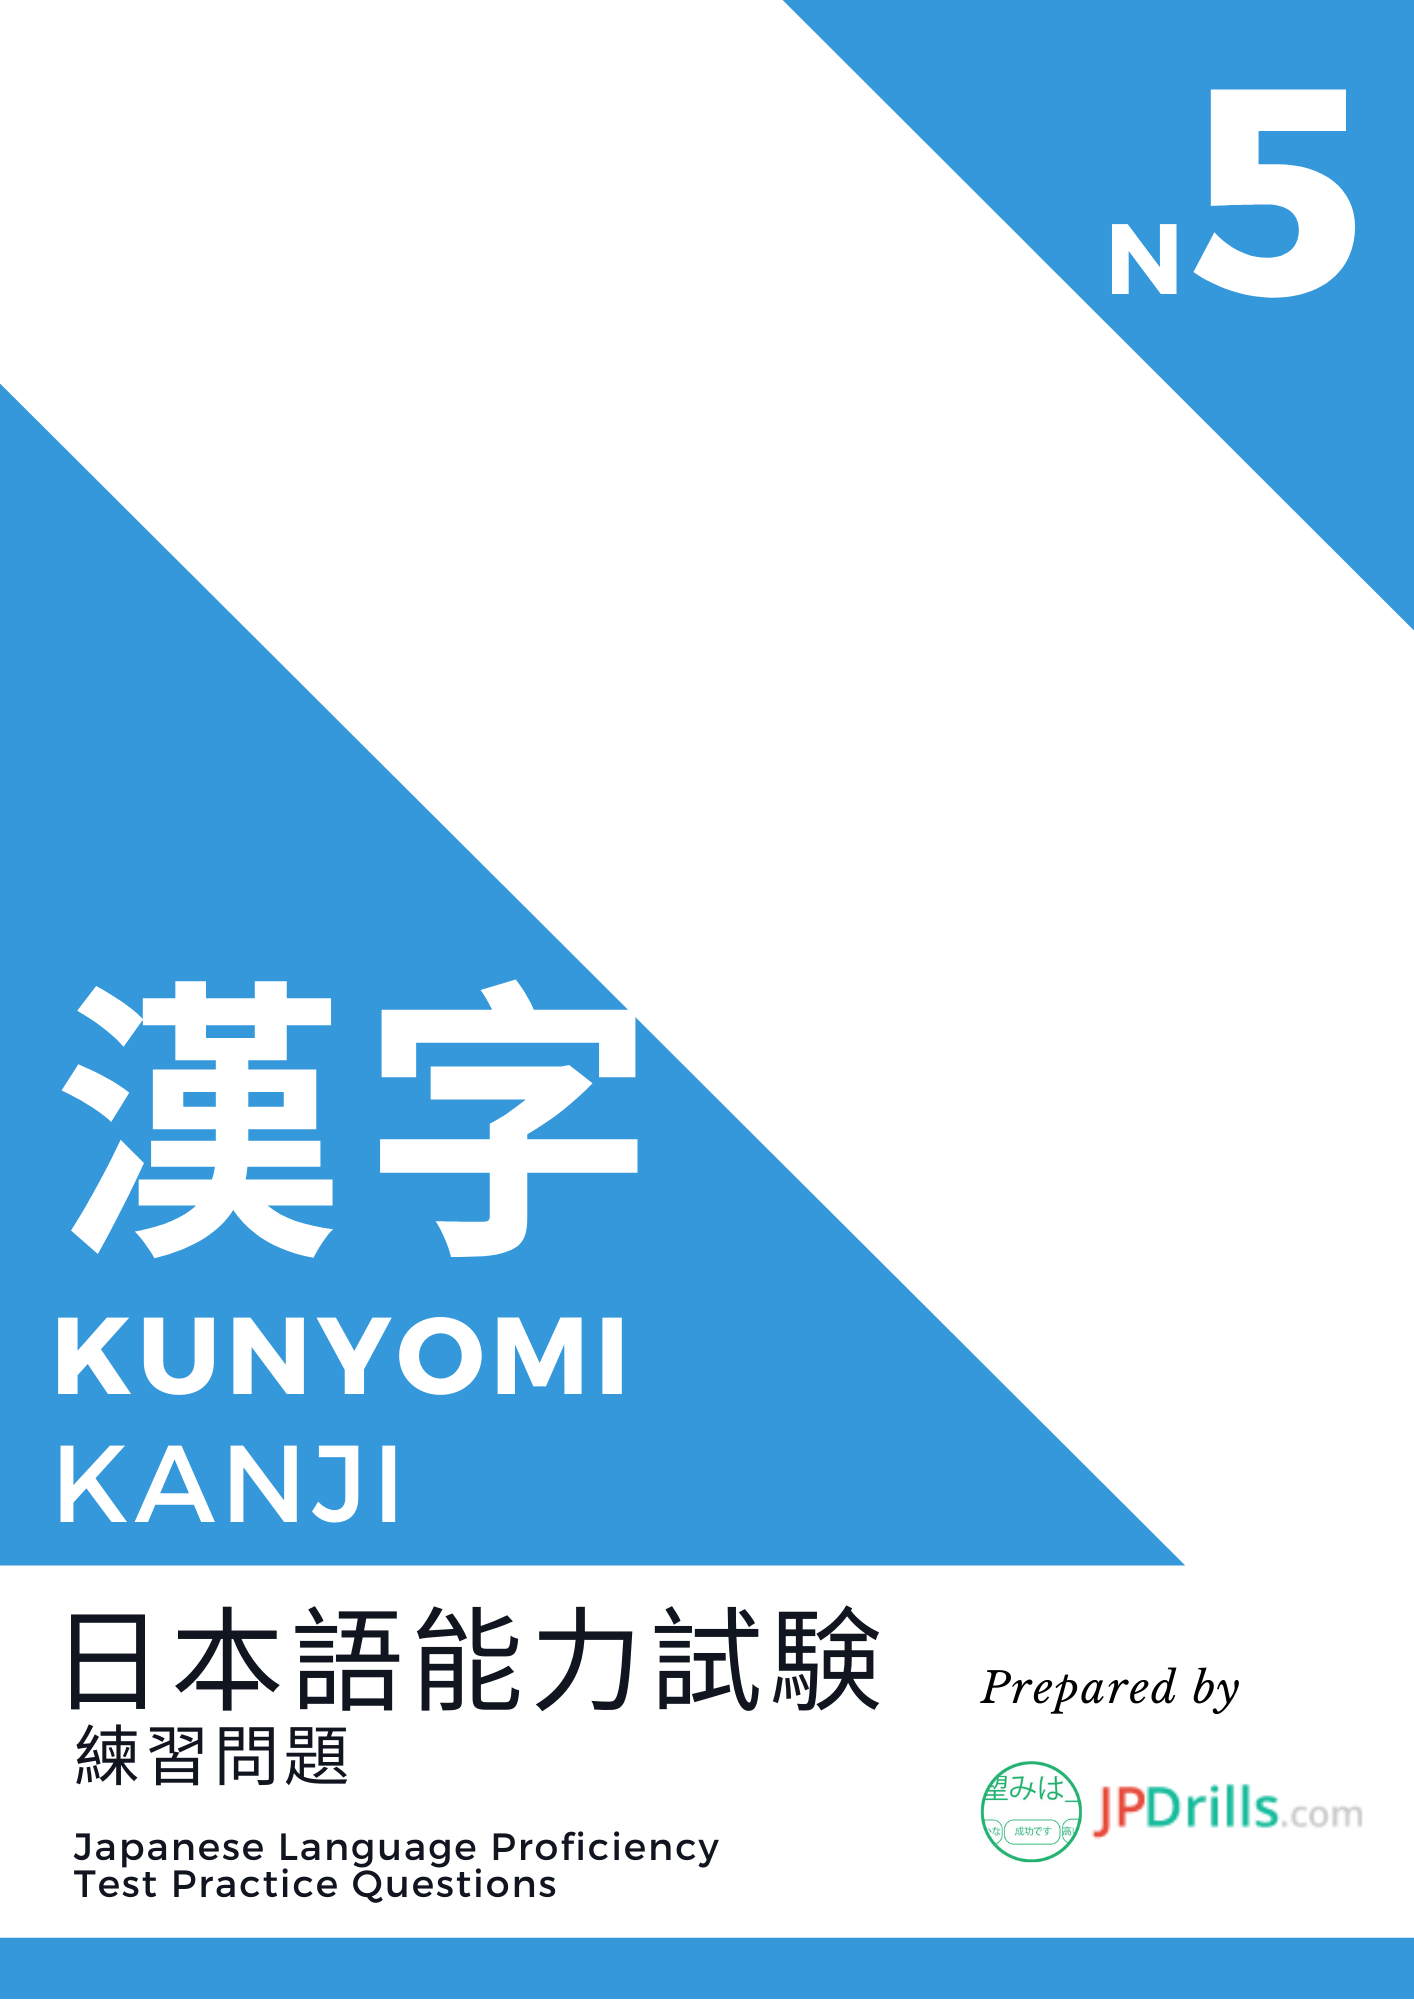 JLPT N5 Kanji (Kunyomi) quiz logo